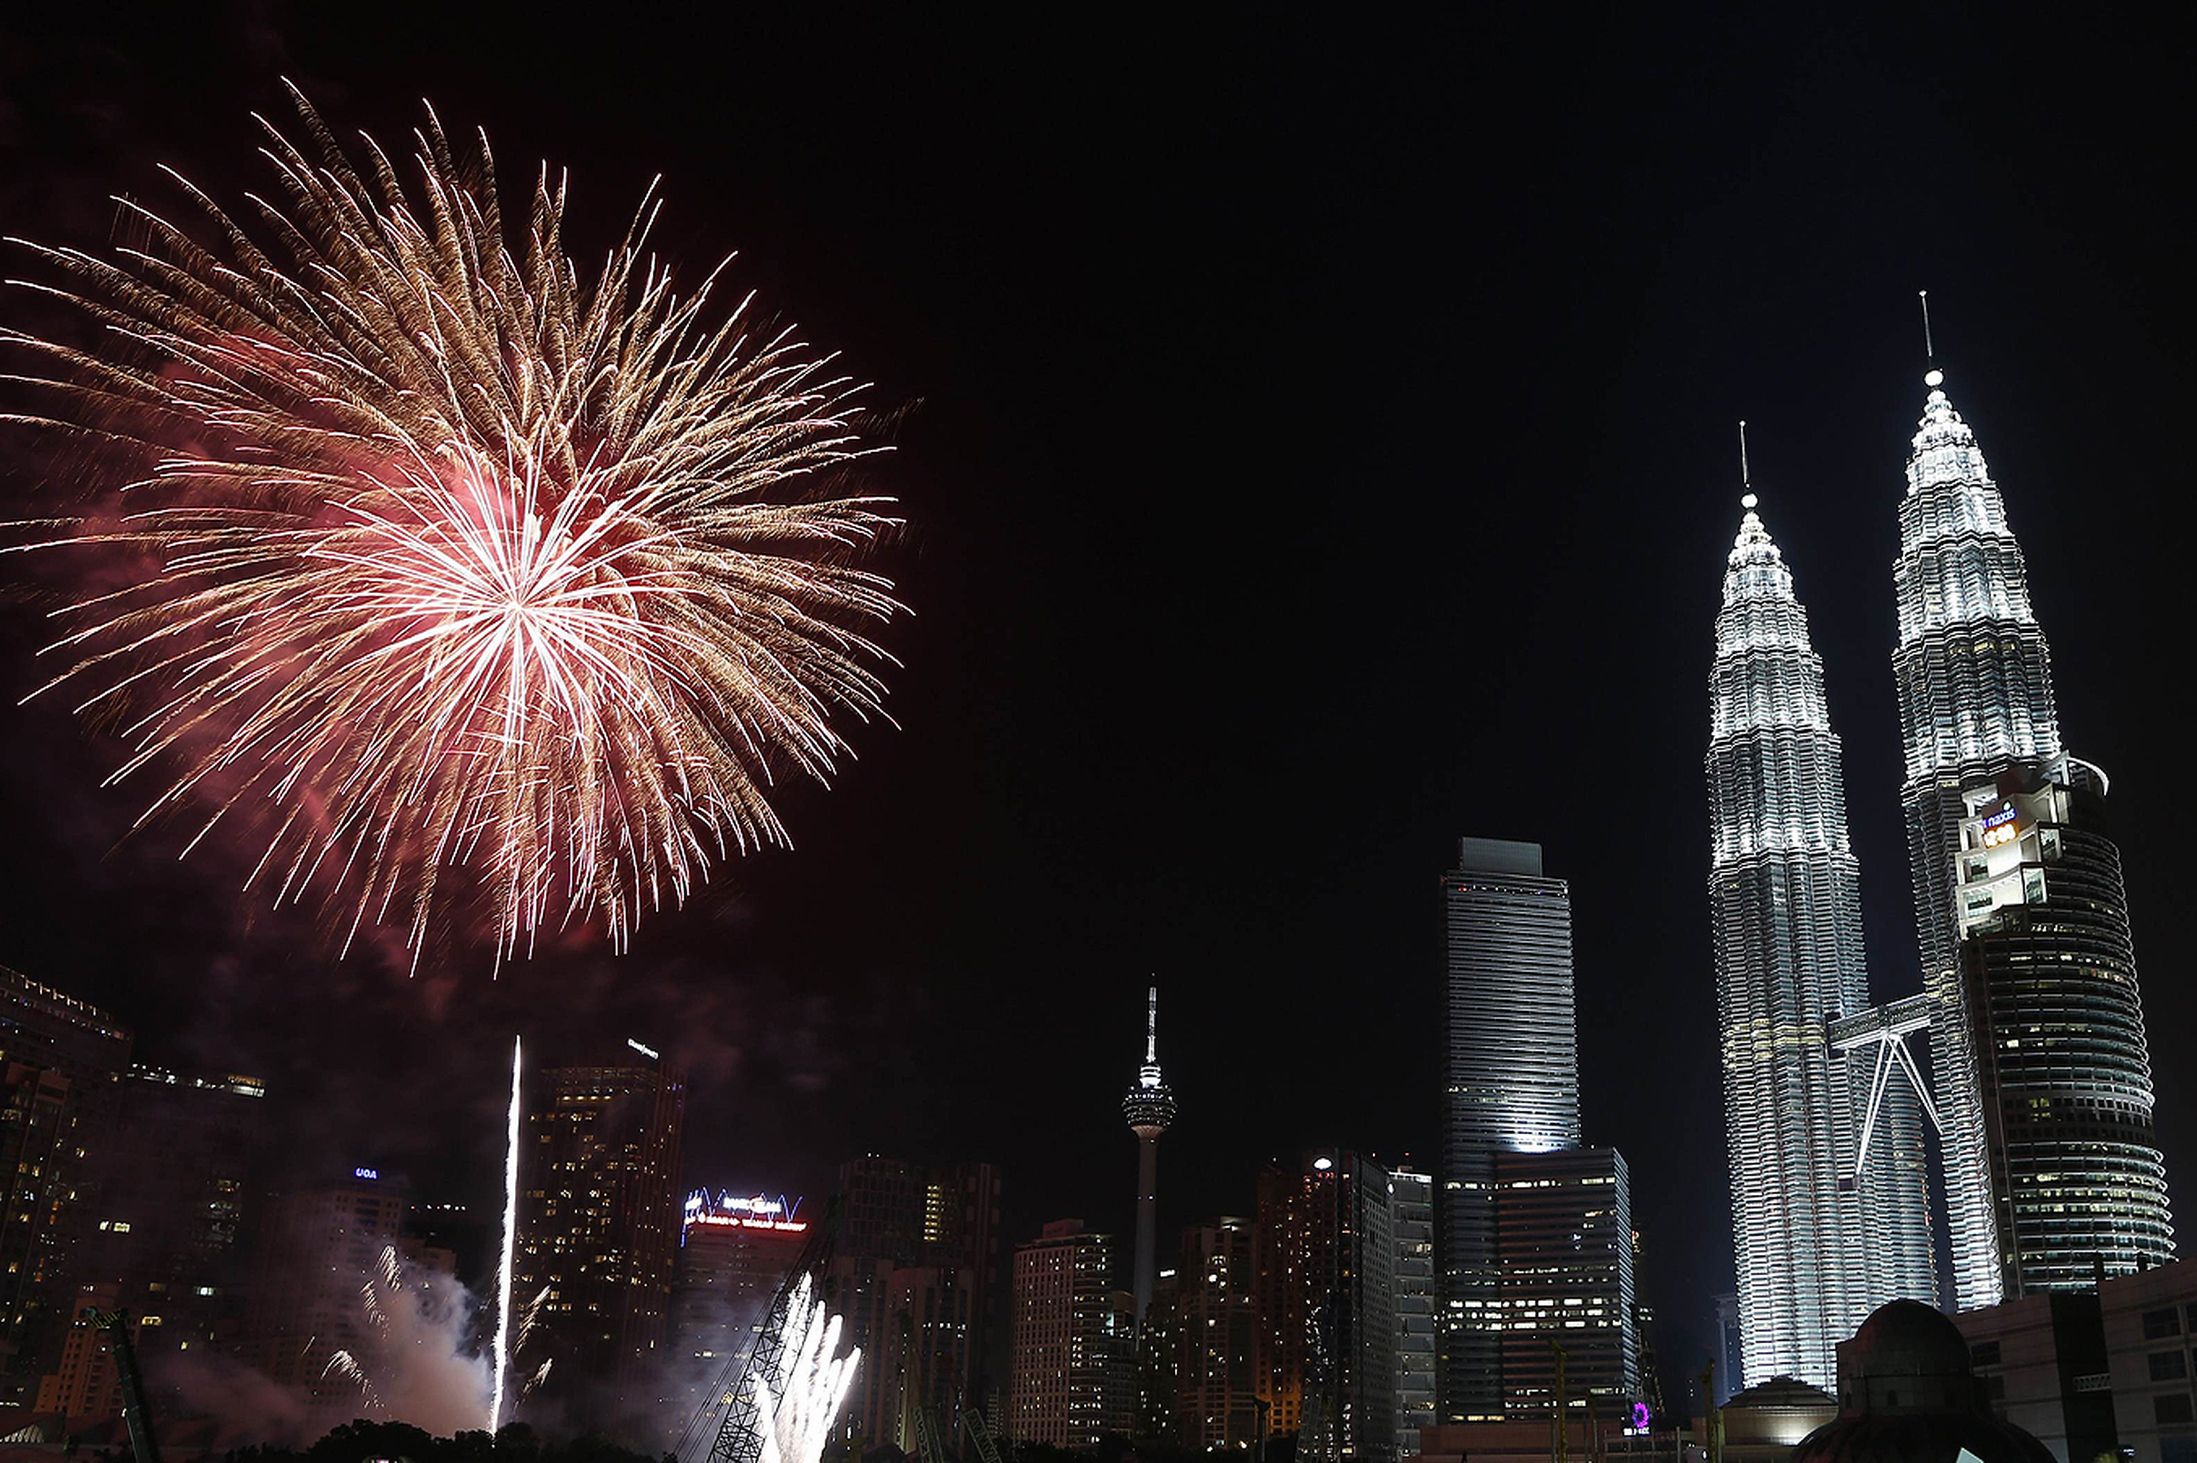 New Years Eve in Malaysia